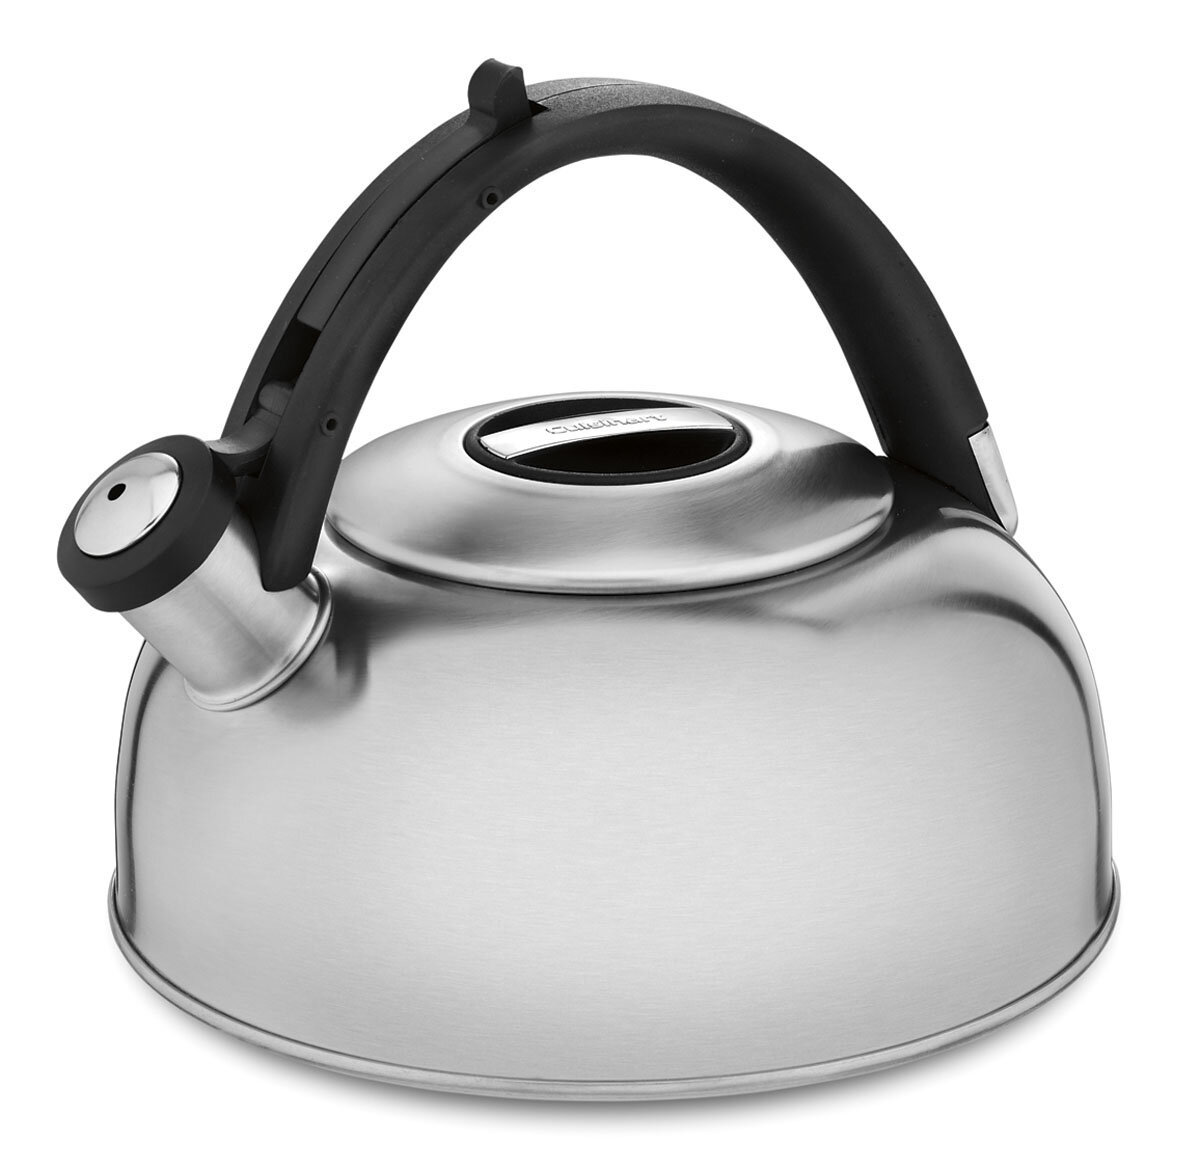  Farberware Teakettles Stainless Steel Egg-Shaped Whistling Tea  Kettle, 2.3 Quart, Silver: Home & Kitchen